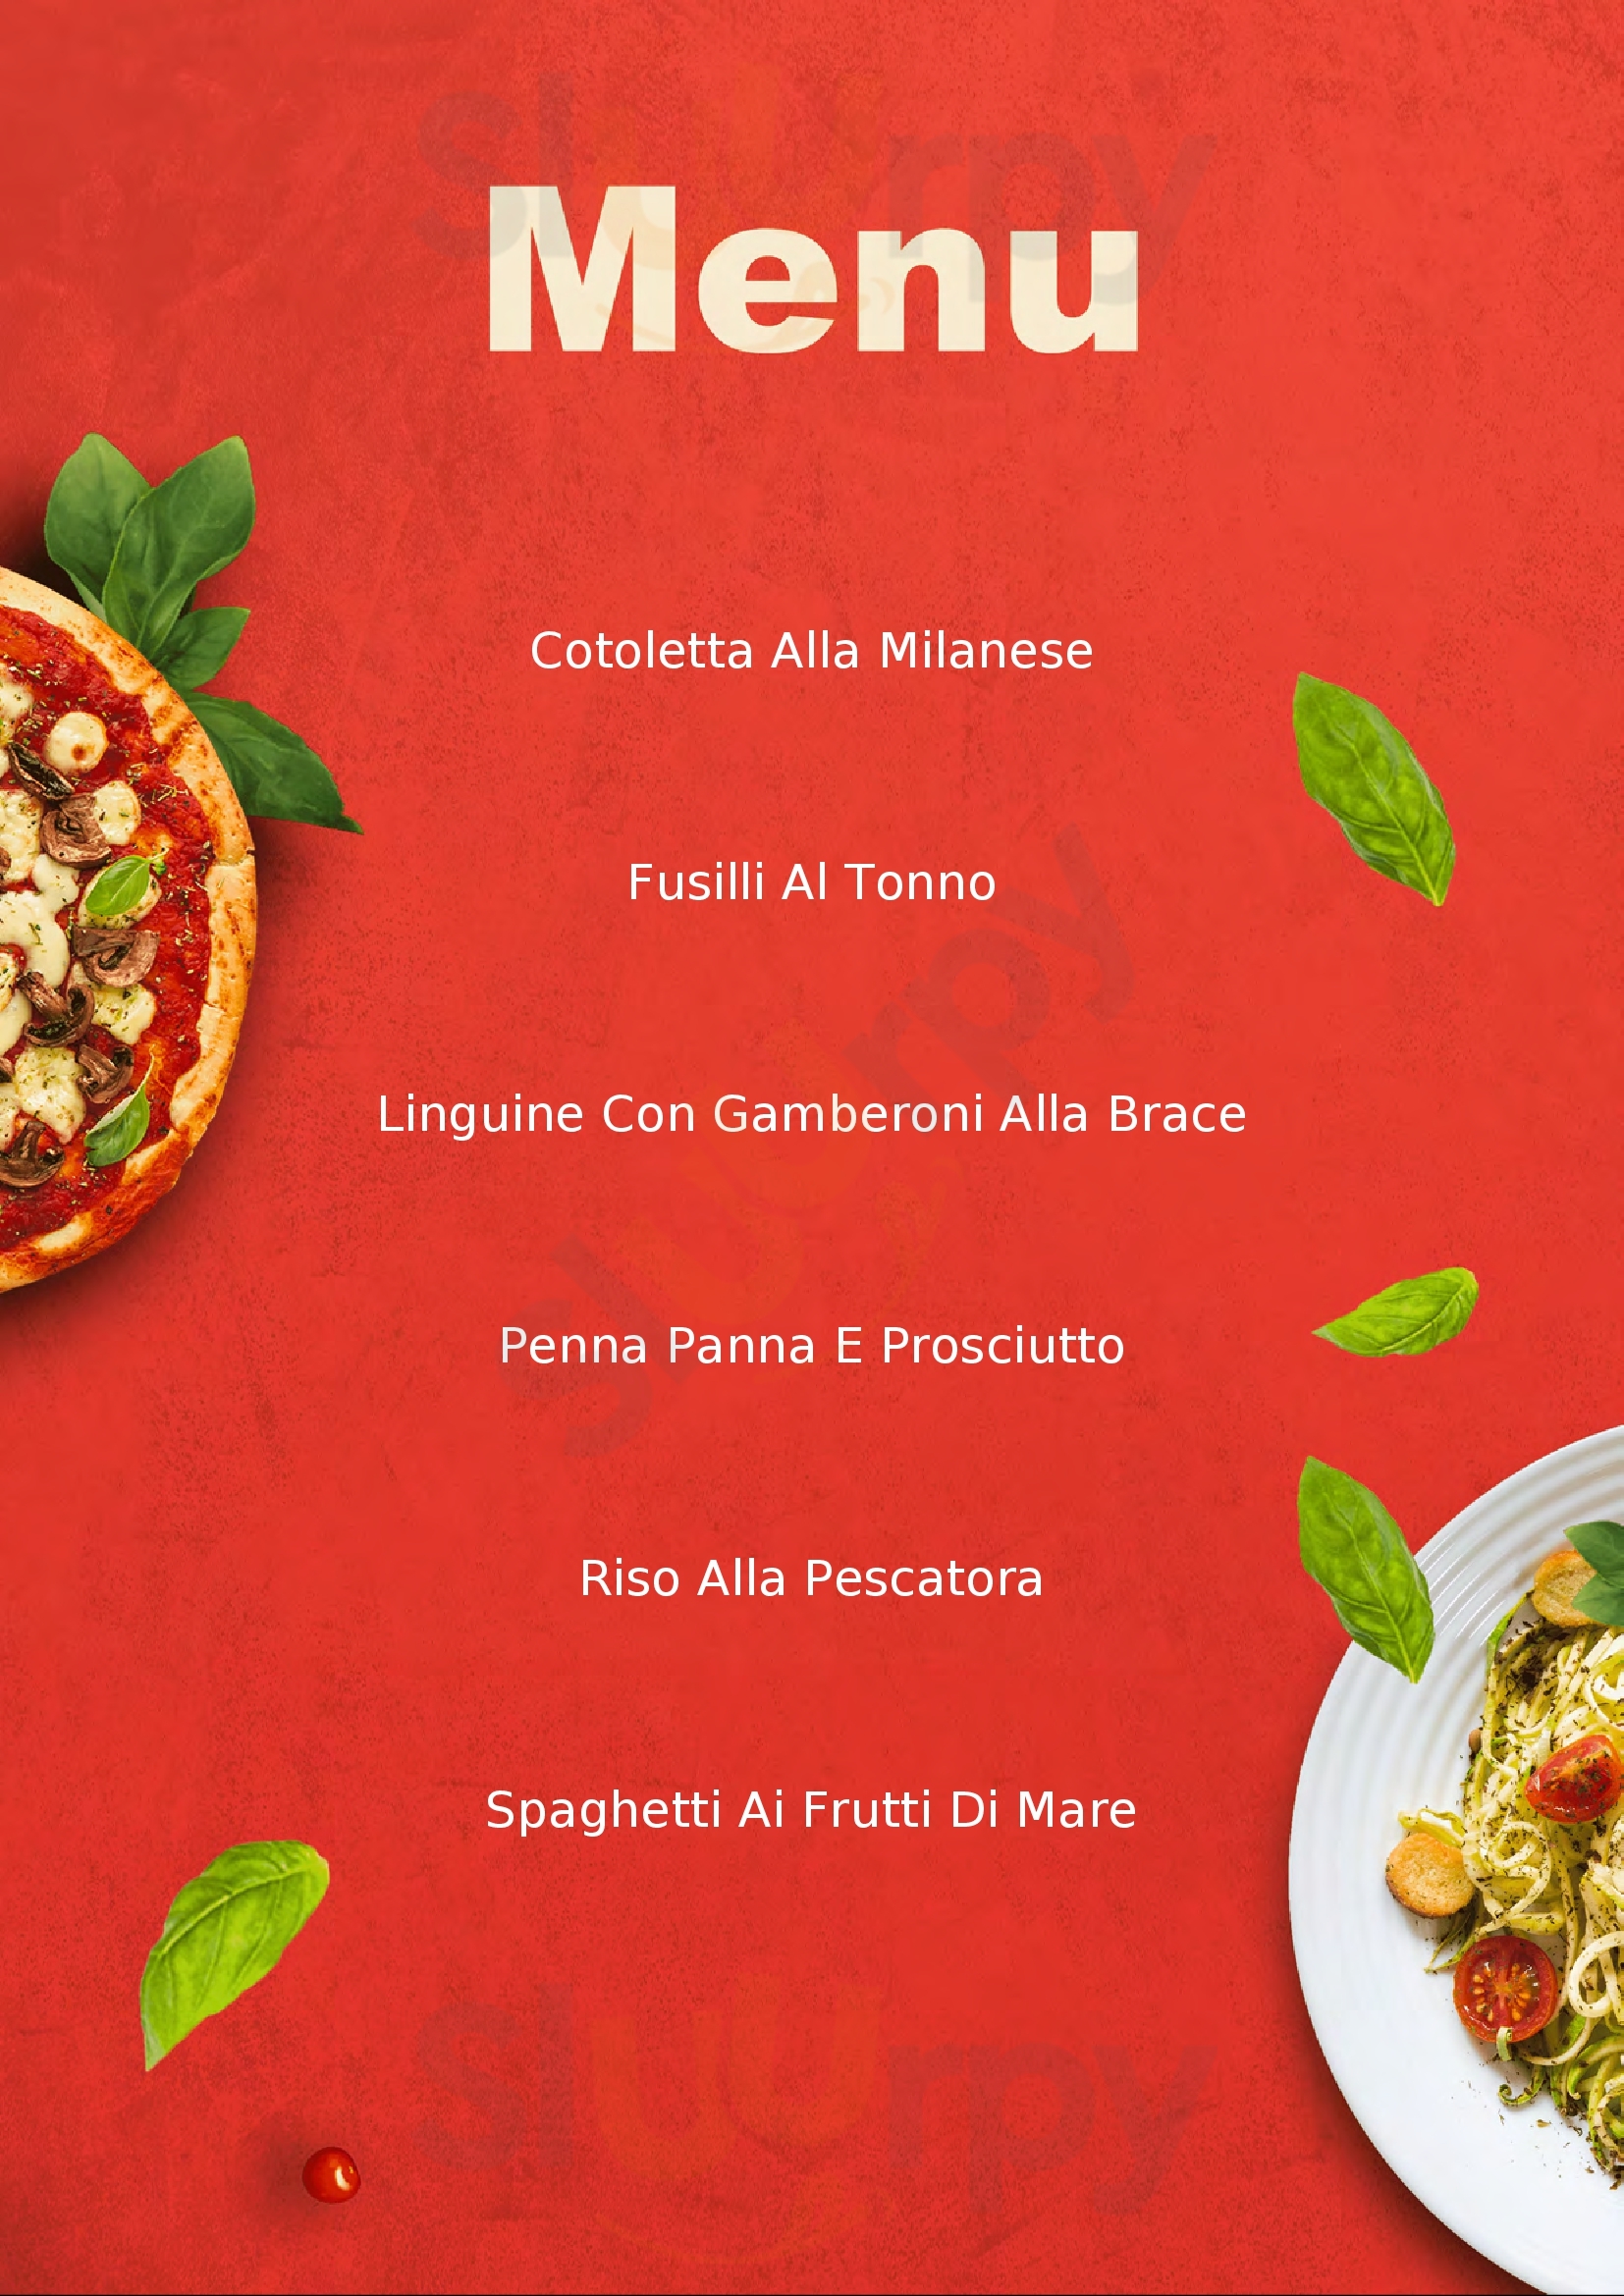 Ristorante Pizzeria Tre Pini Mozzanica menù 1 pagina